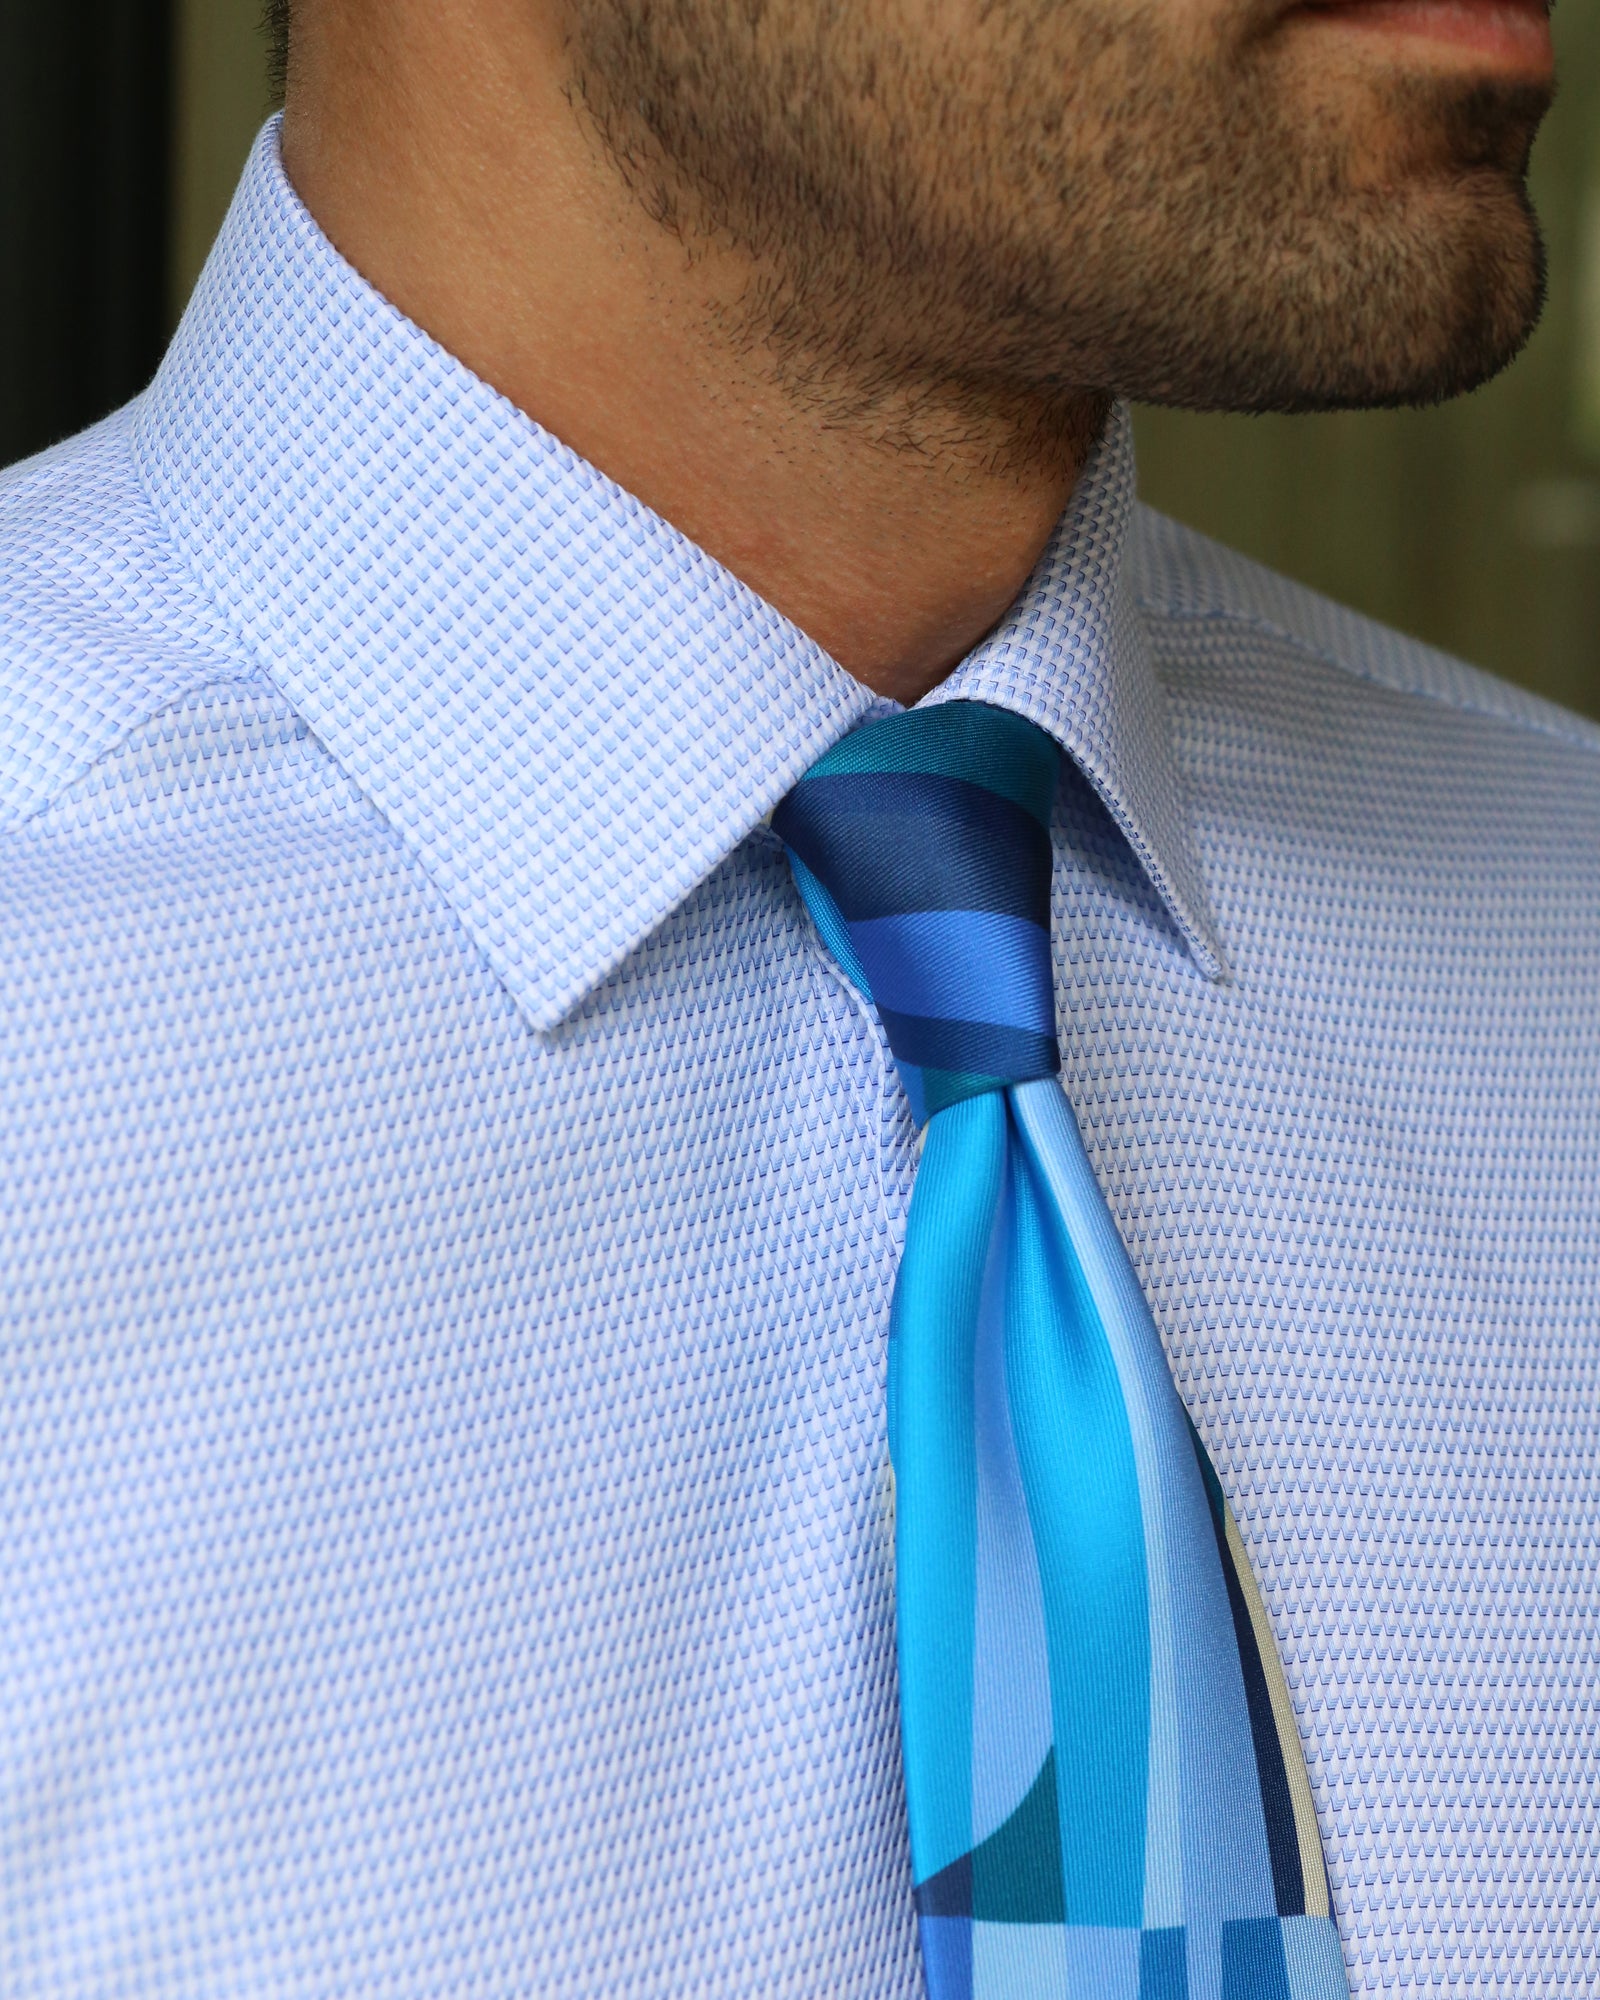 DÉCLIC Antoine Textured Shirt - Blue